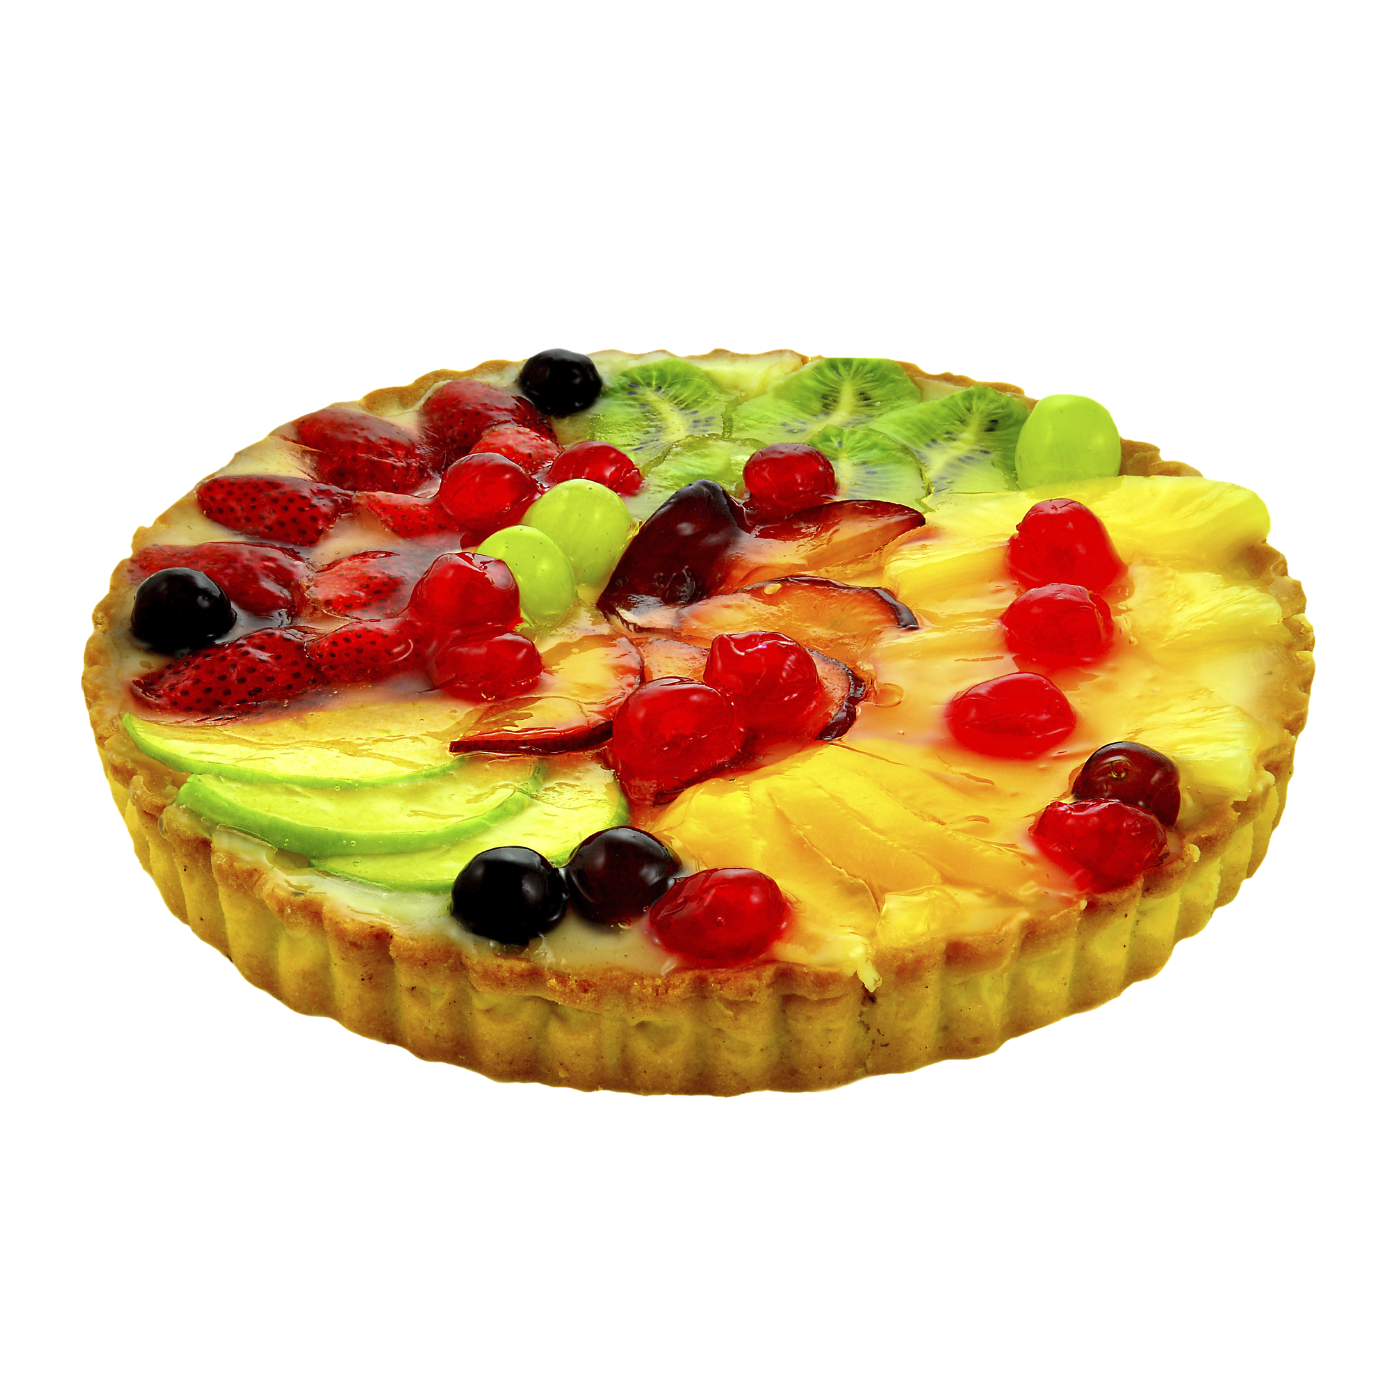 Cheesecake con frutas